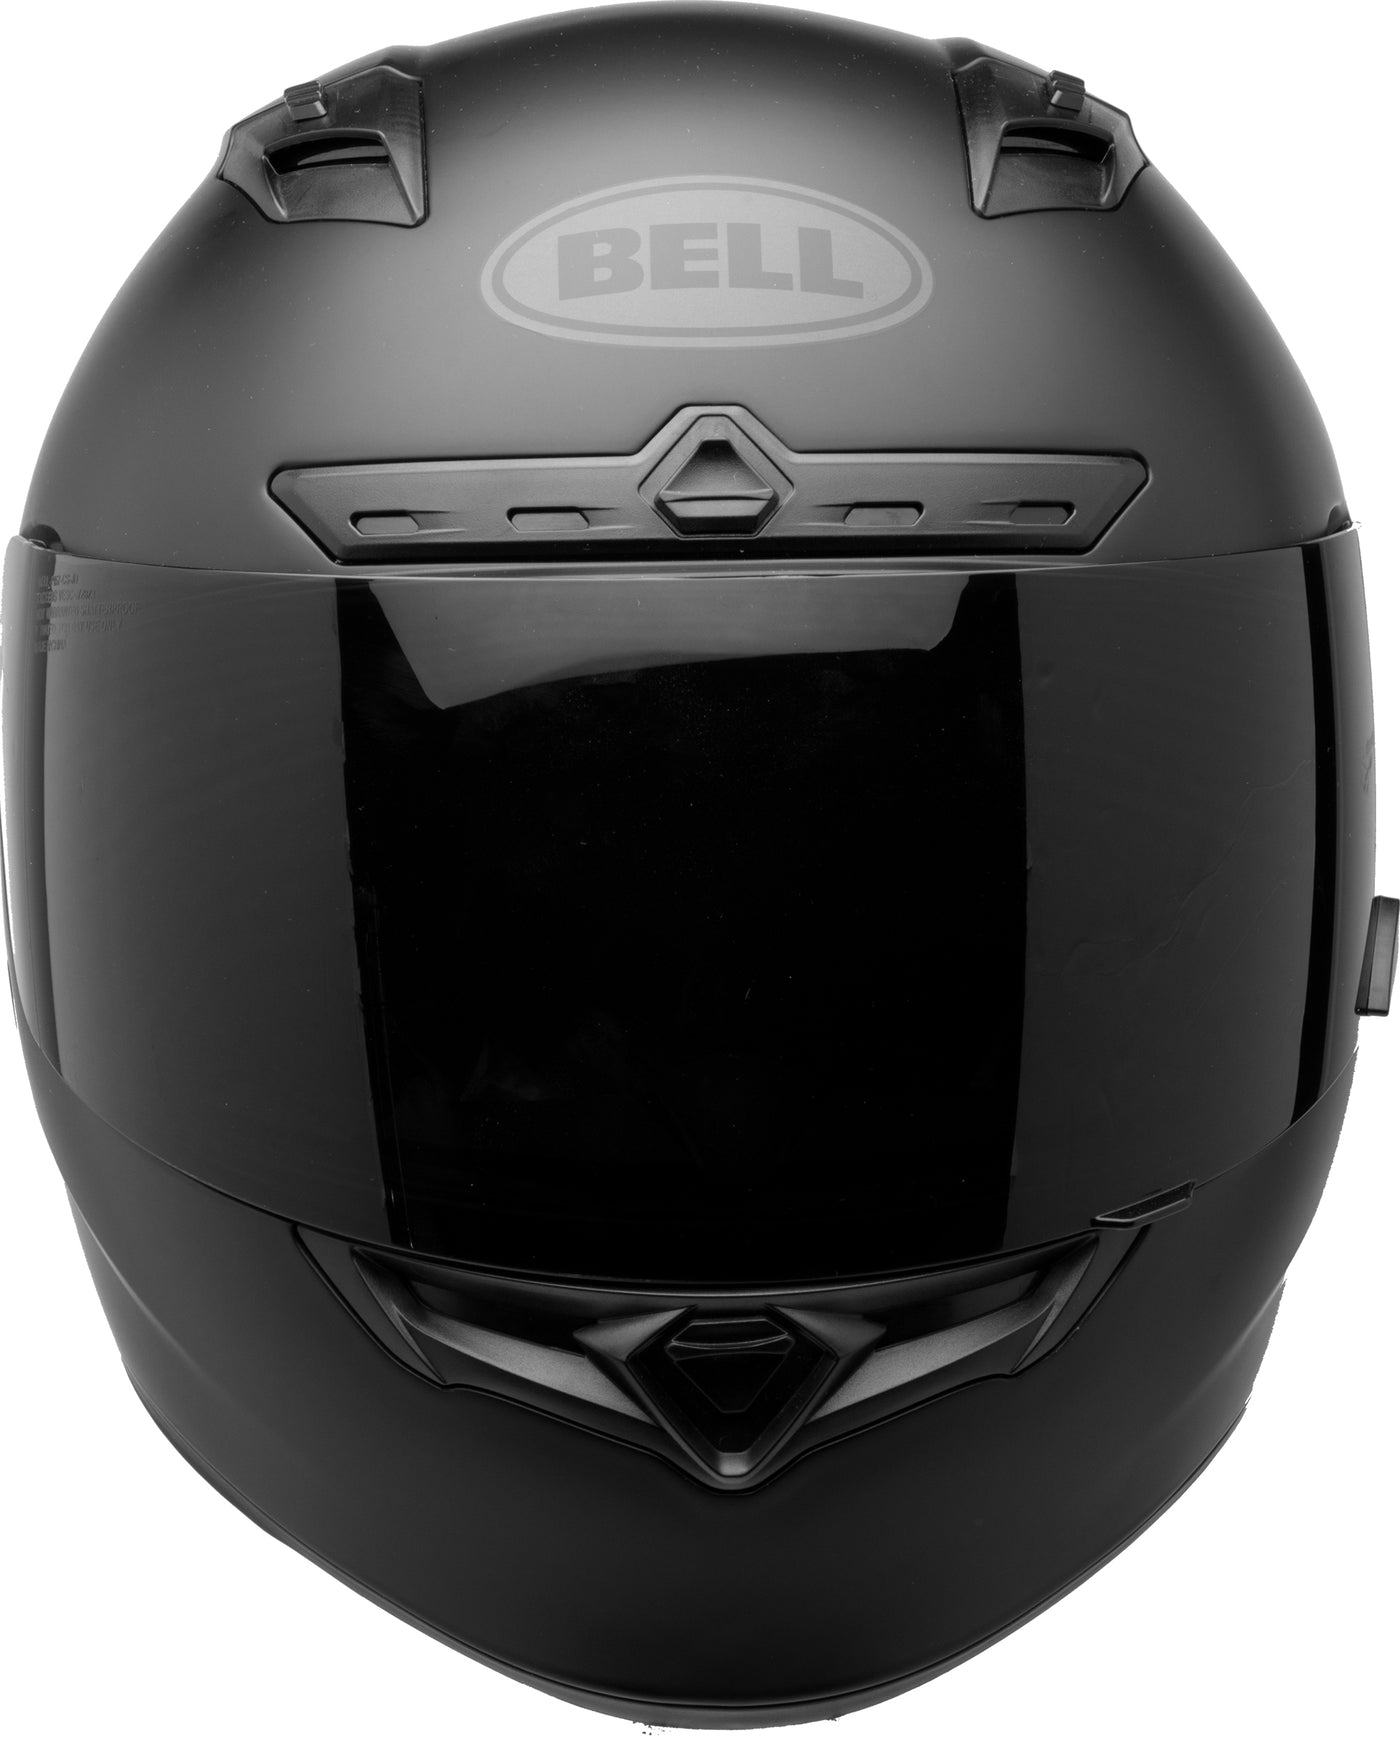 Bell Helmets Qualifier DLX - Matte Black